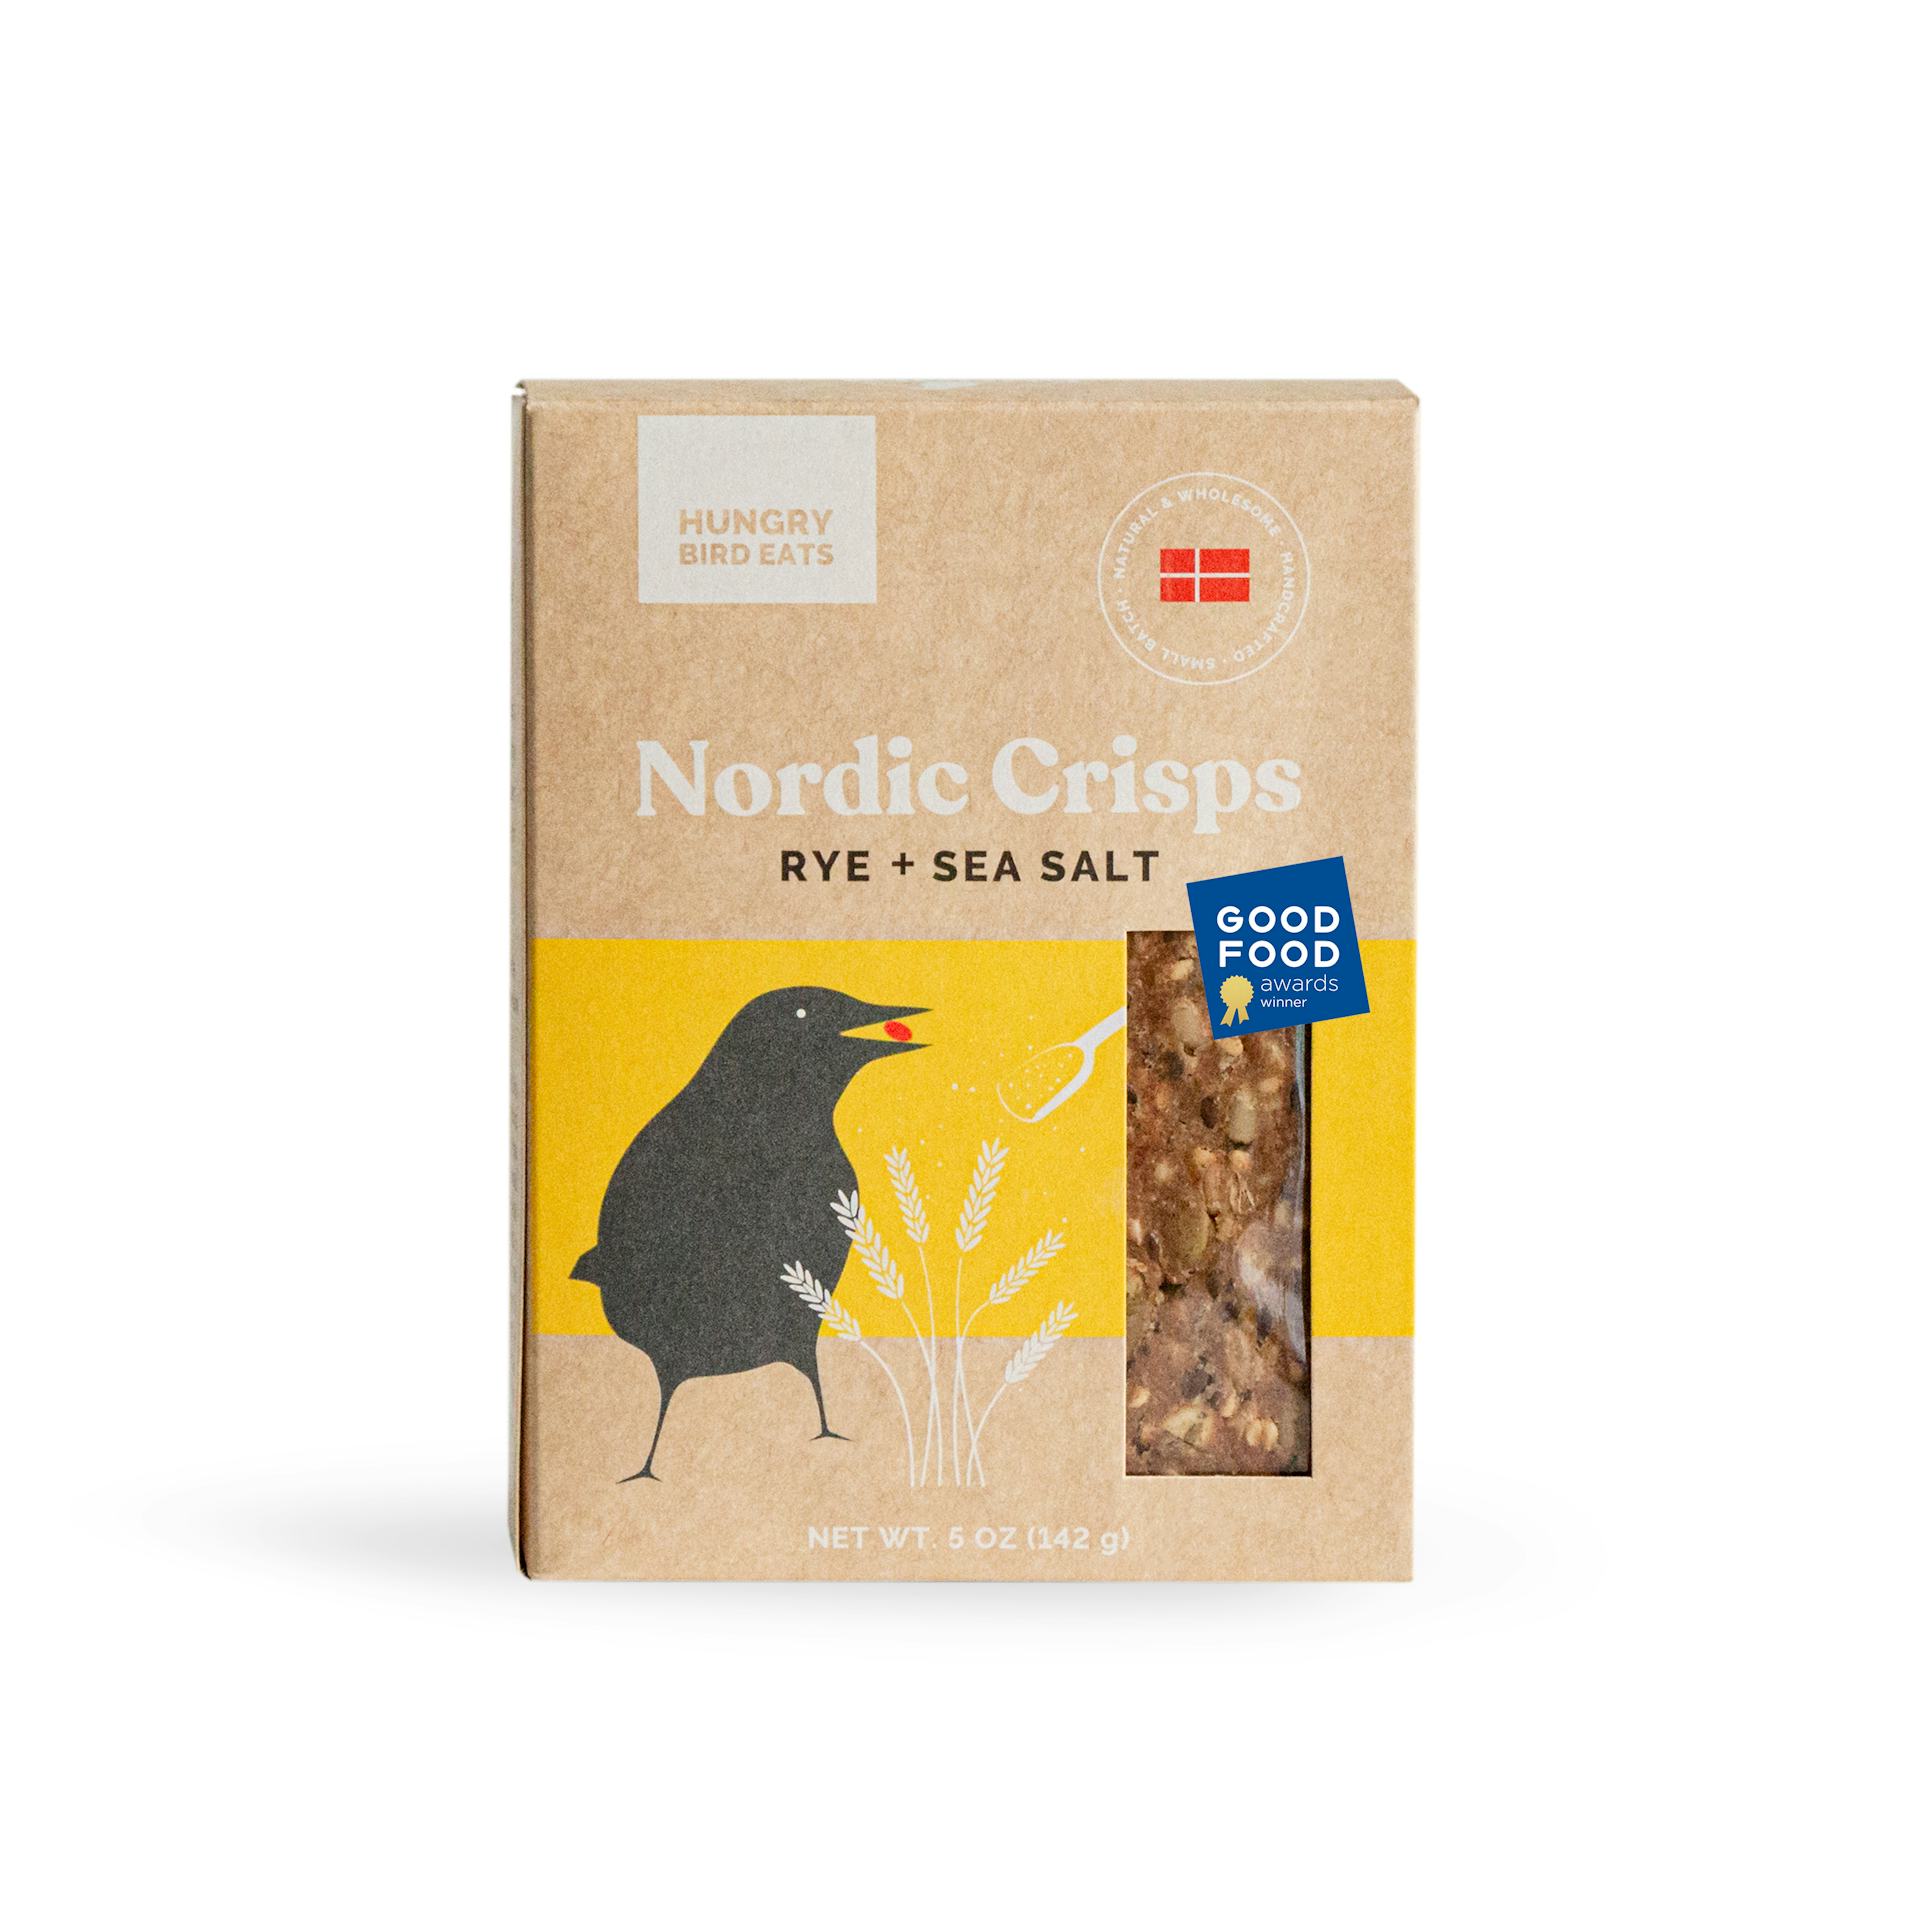 Product Image: Rye + Sea Salt Nordic Crisps